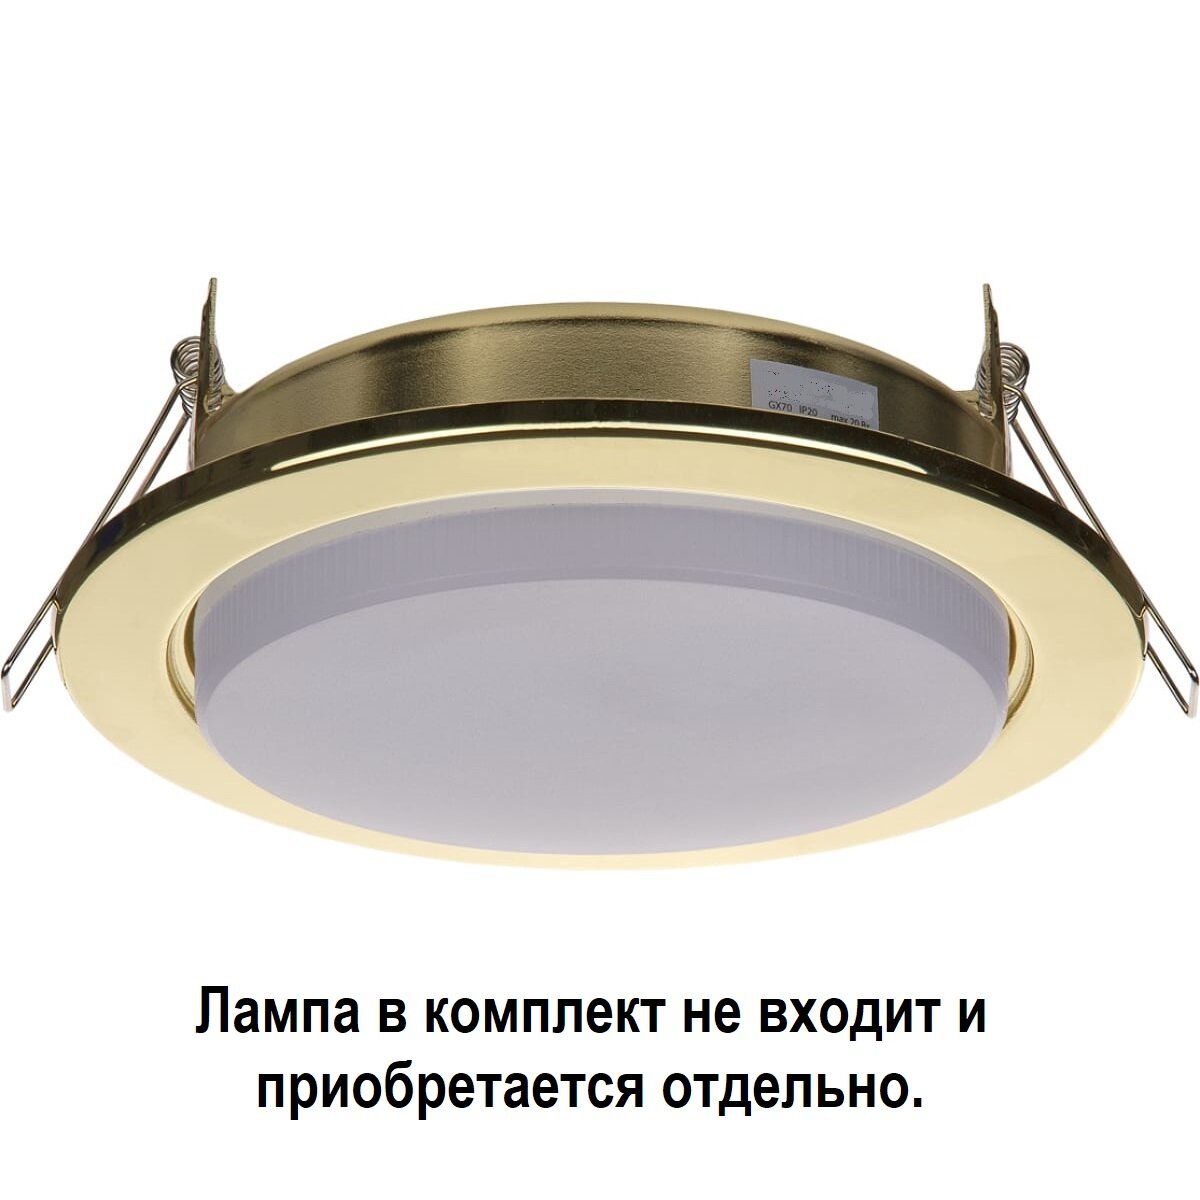 Встраиваемый светильник Ecola FG70H5ECB, GX70, 23 Вт